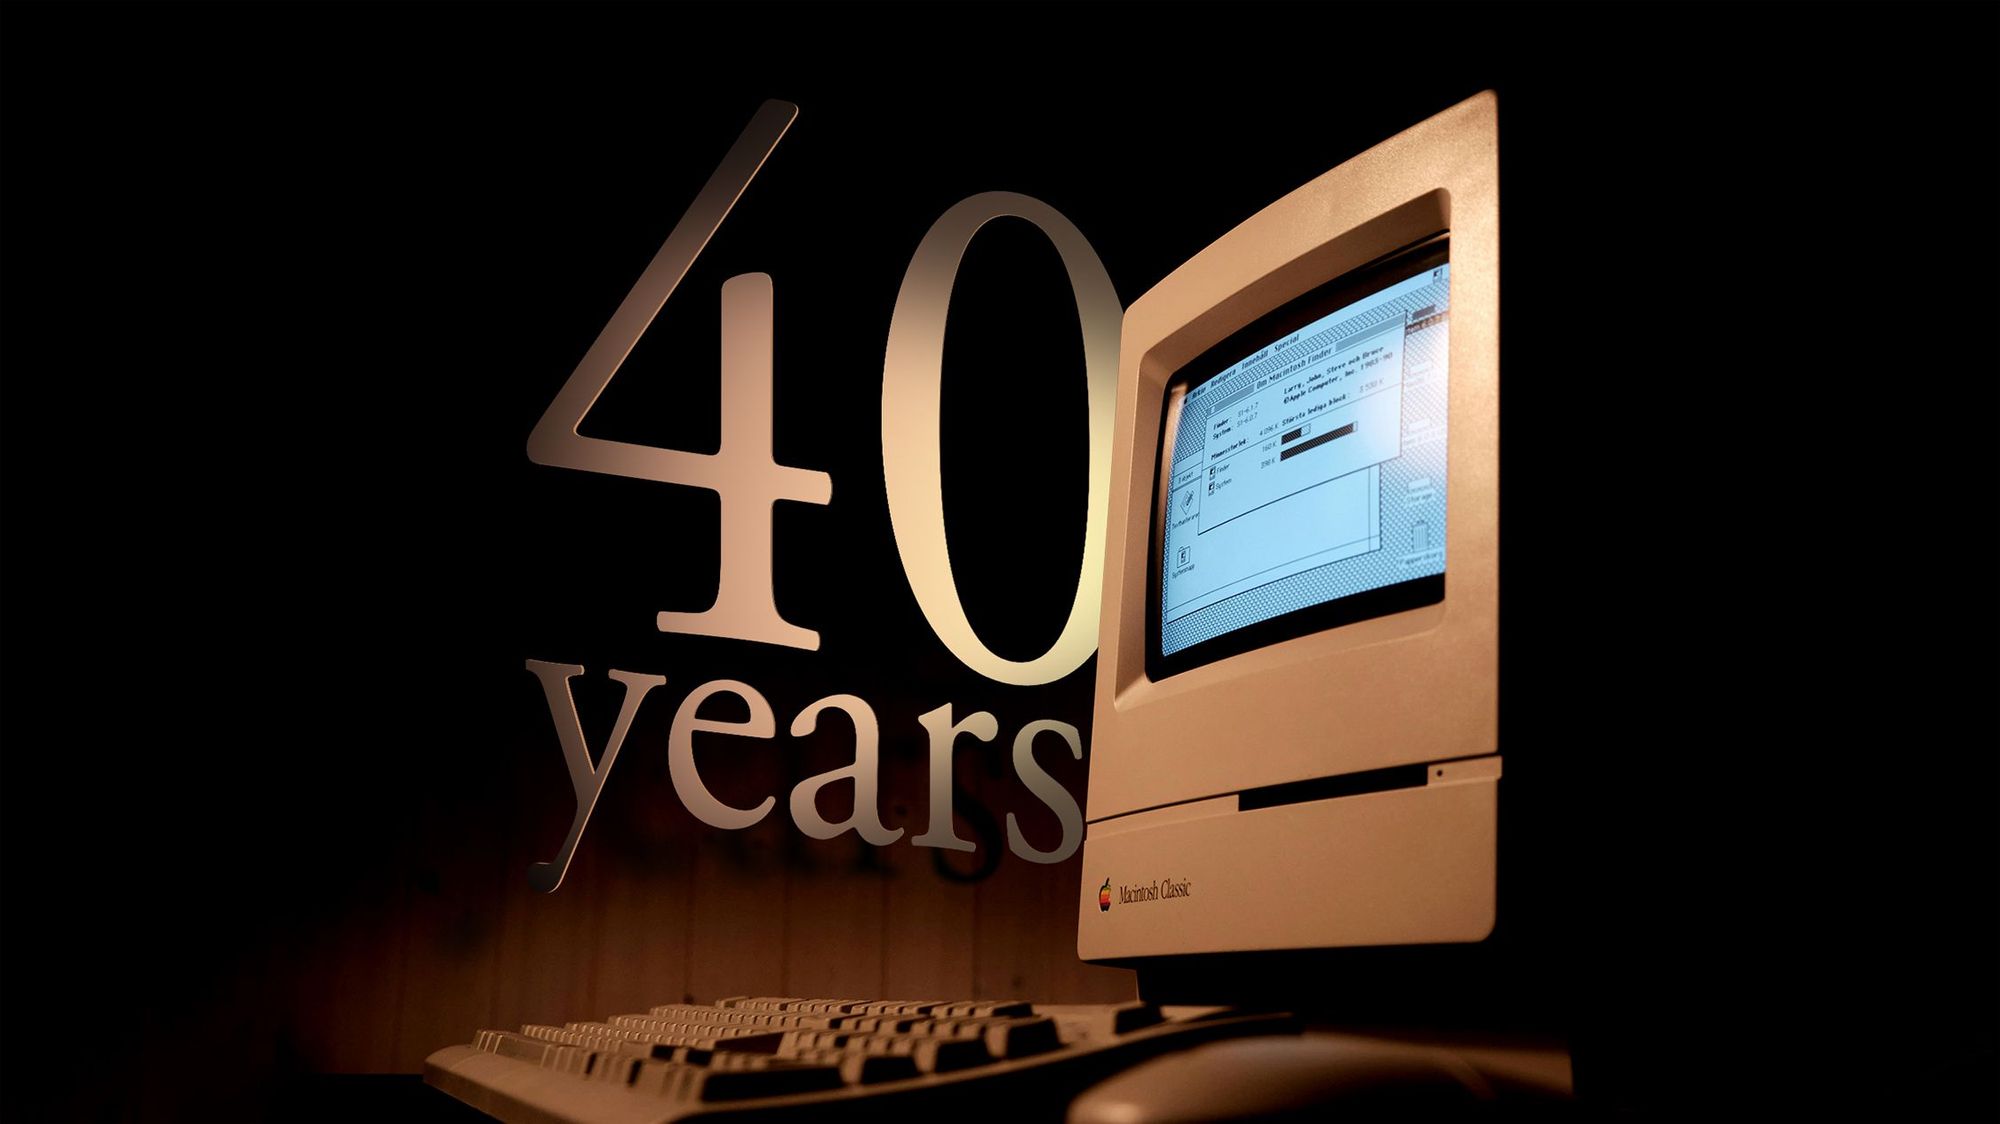 Parabéns, Mac! O primeiro Macintosh foi lançado há 40 anos post image